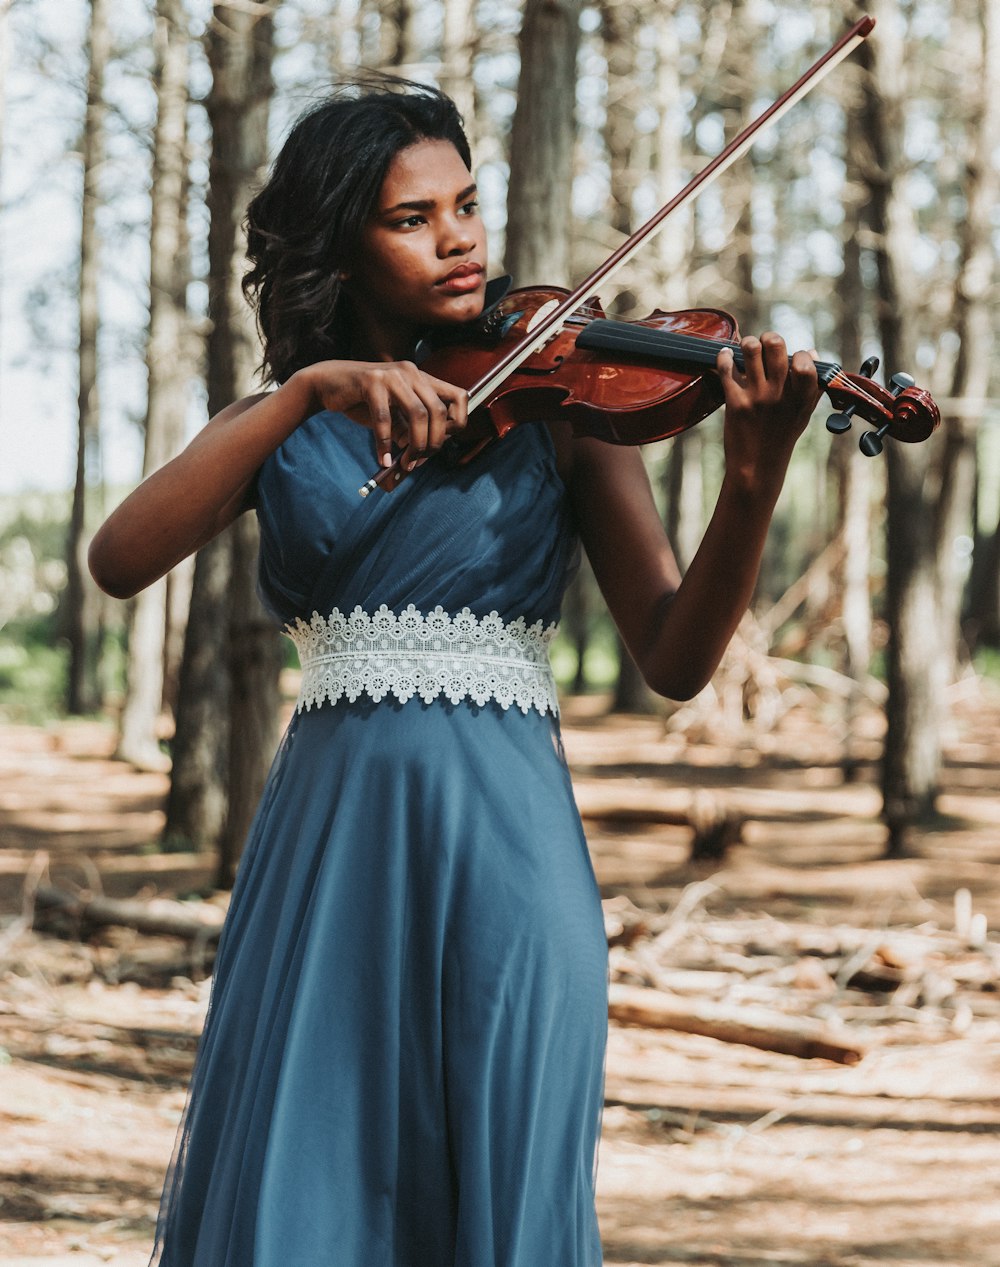 Una mujer con un vestido azul tocando un violín